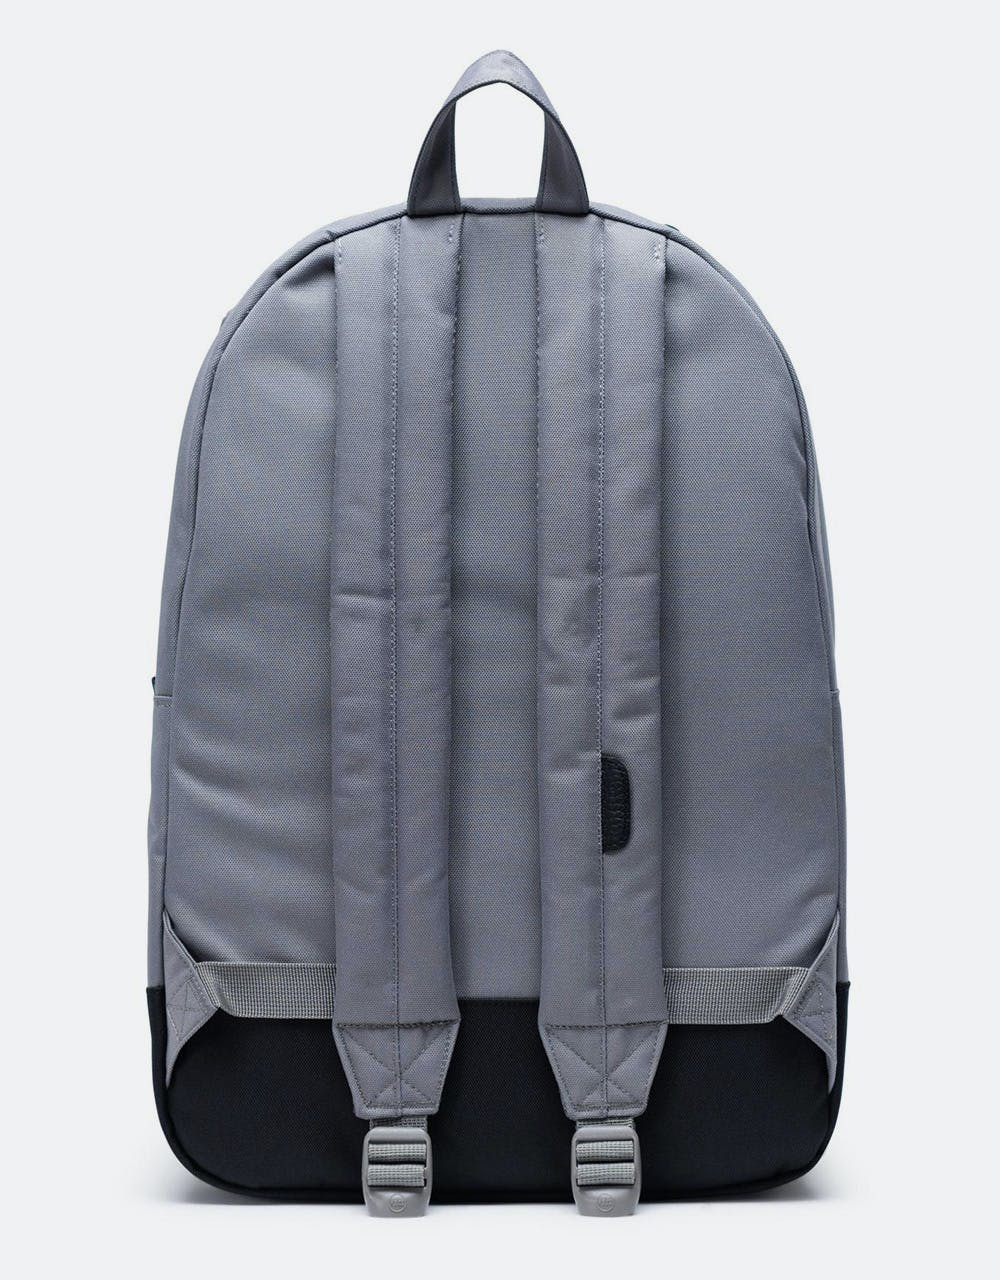 Herschel Supply Co. Heritage Backpack - Grey/Black